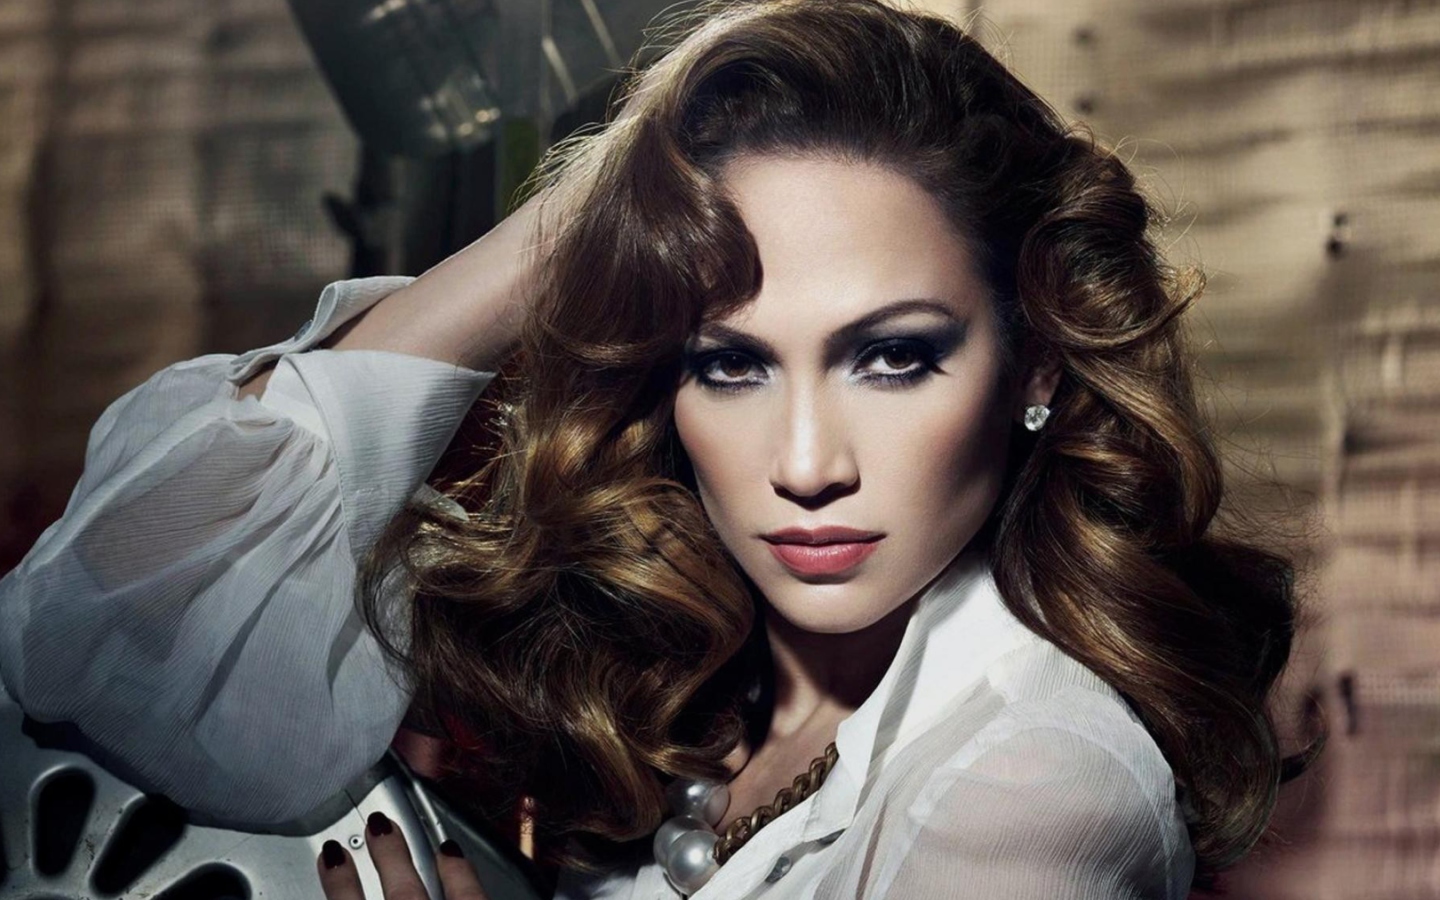 Das Jennifer Lopez Wallpaper 1440x900